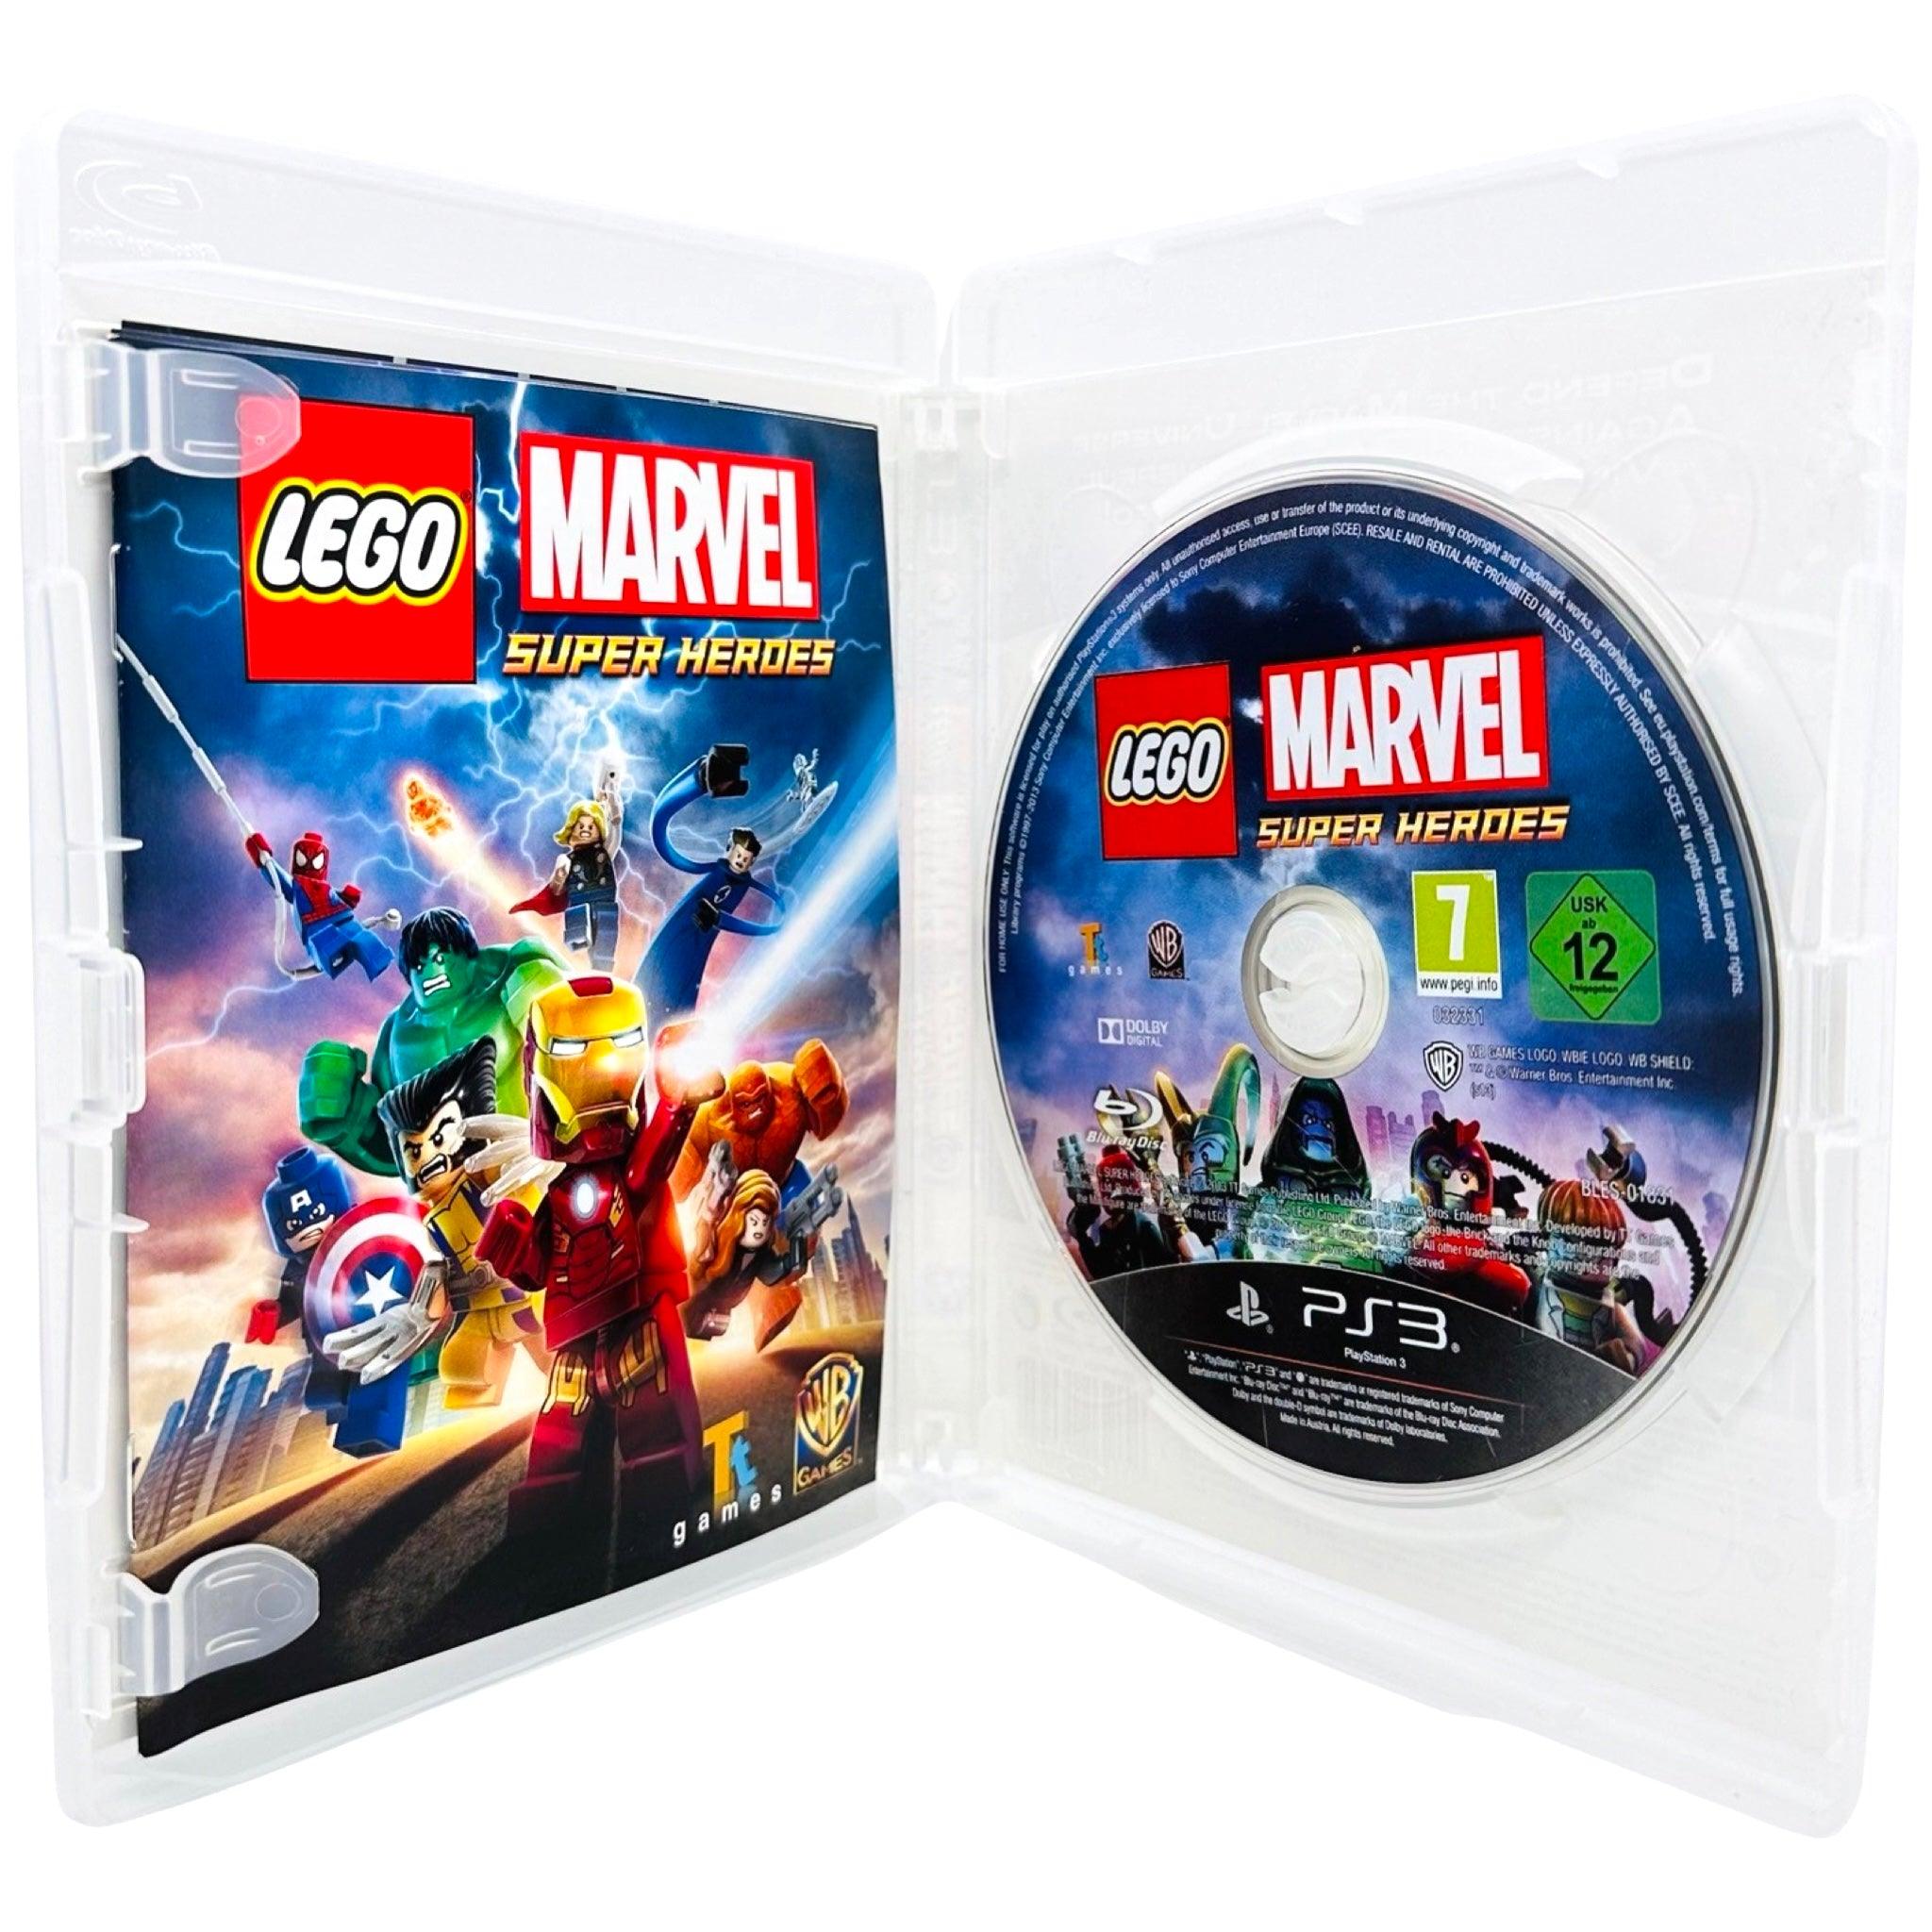 PS3: LEGO Marvel Super Heroes - RetroGaming.no